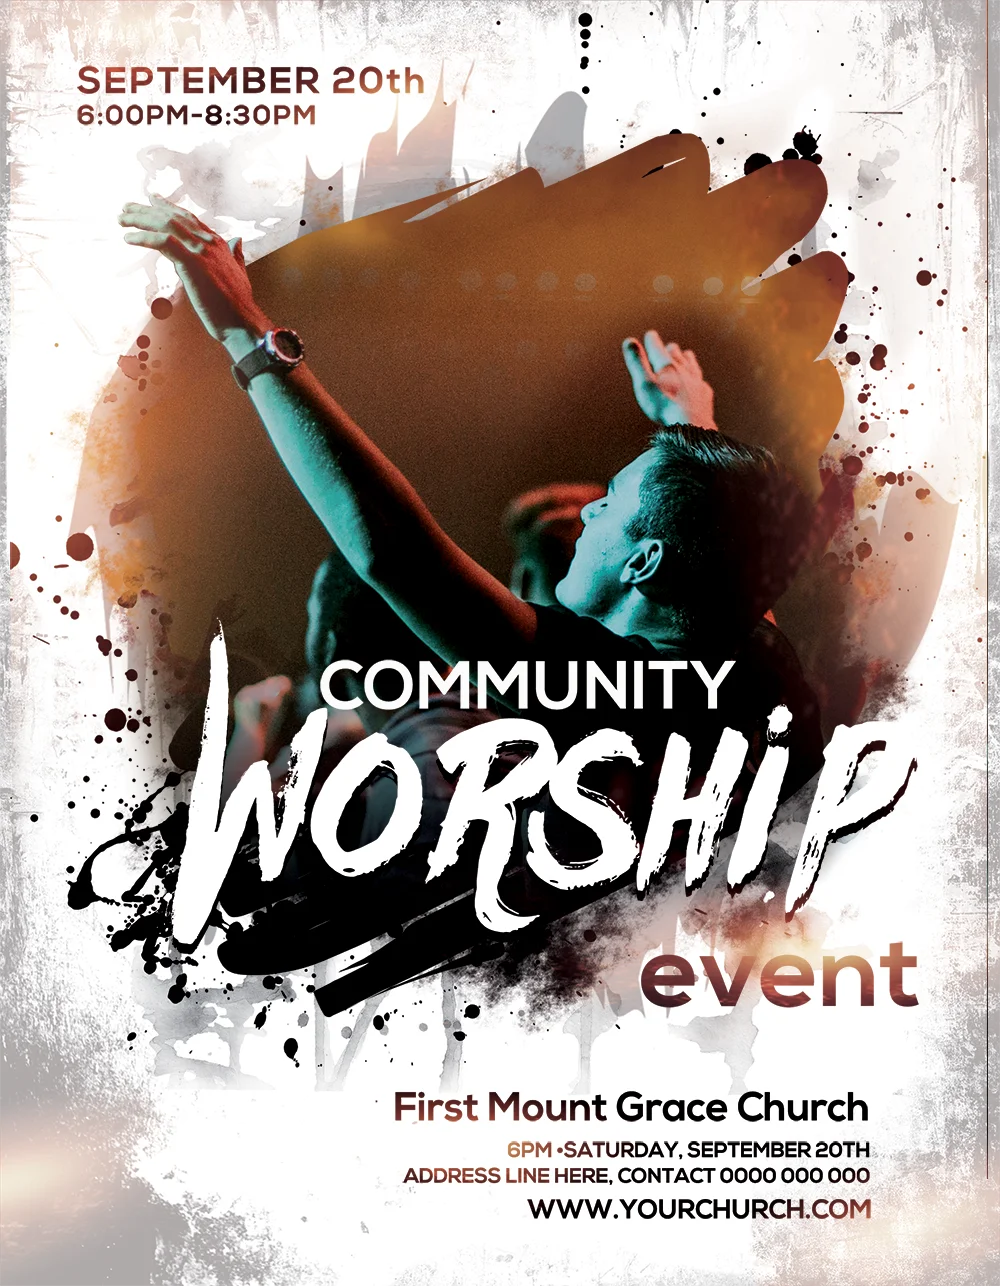 Flyer gratuit pentru biserică – Eveniment de închinare comunitară de către Ministry Voice